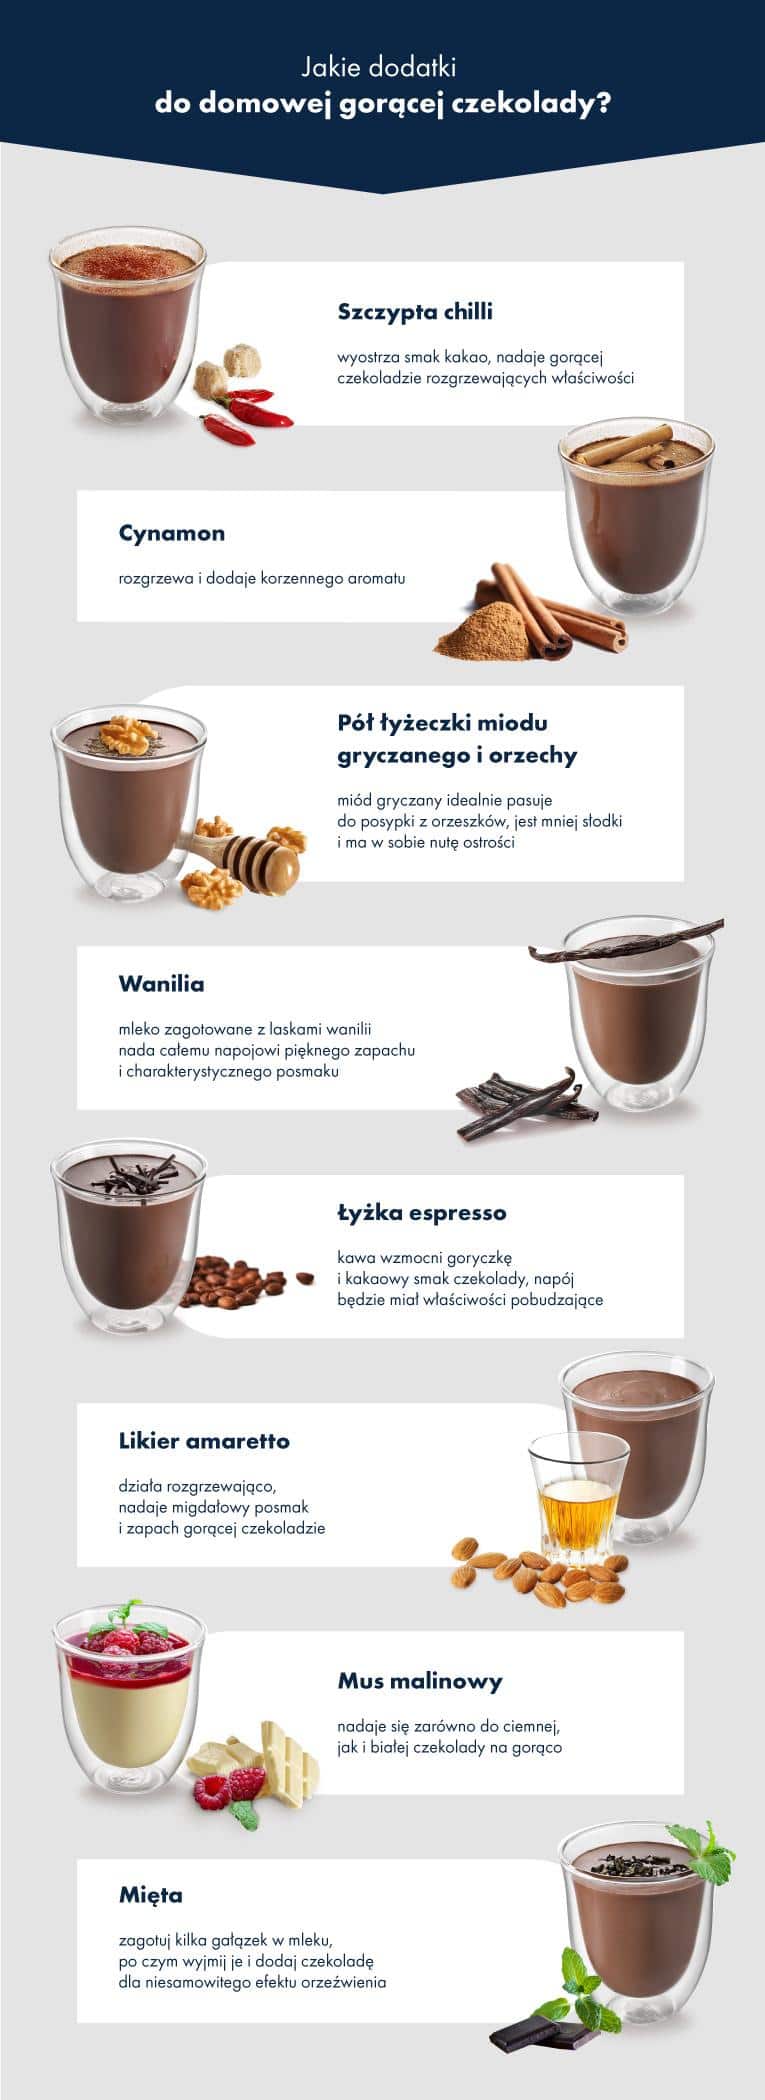 Jakie dodatki do gorącej czekolady